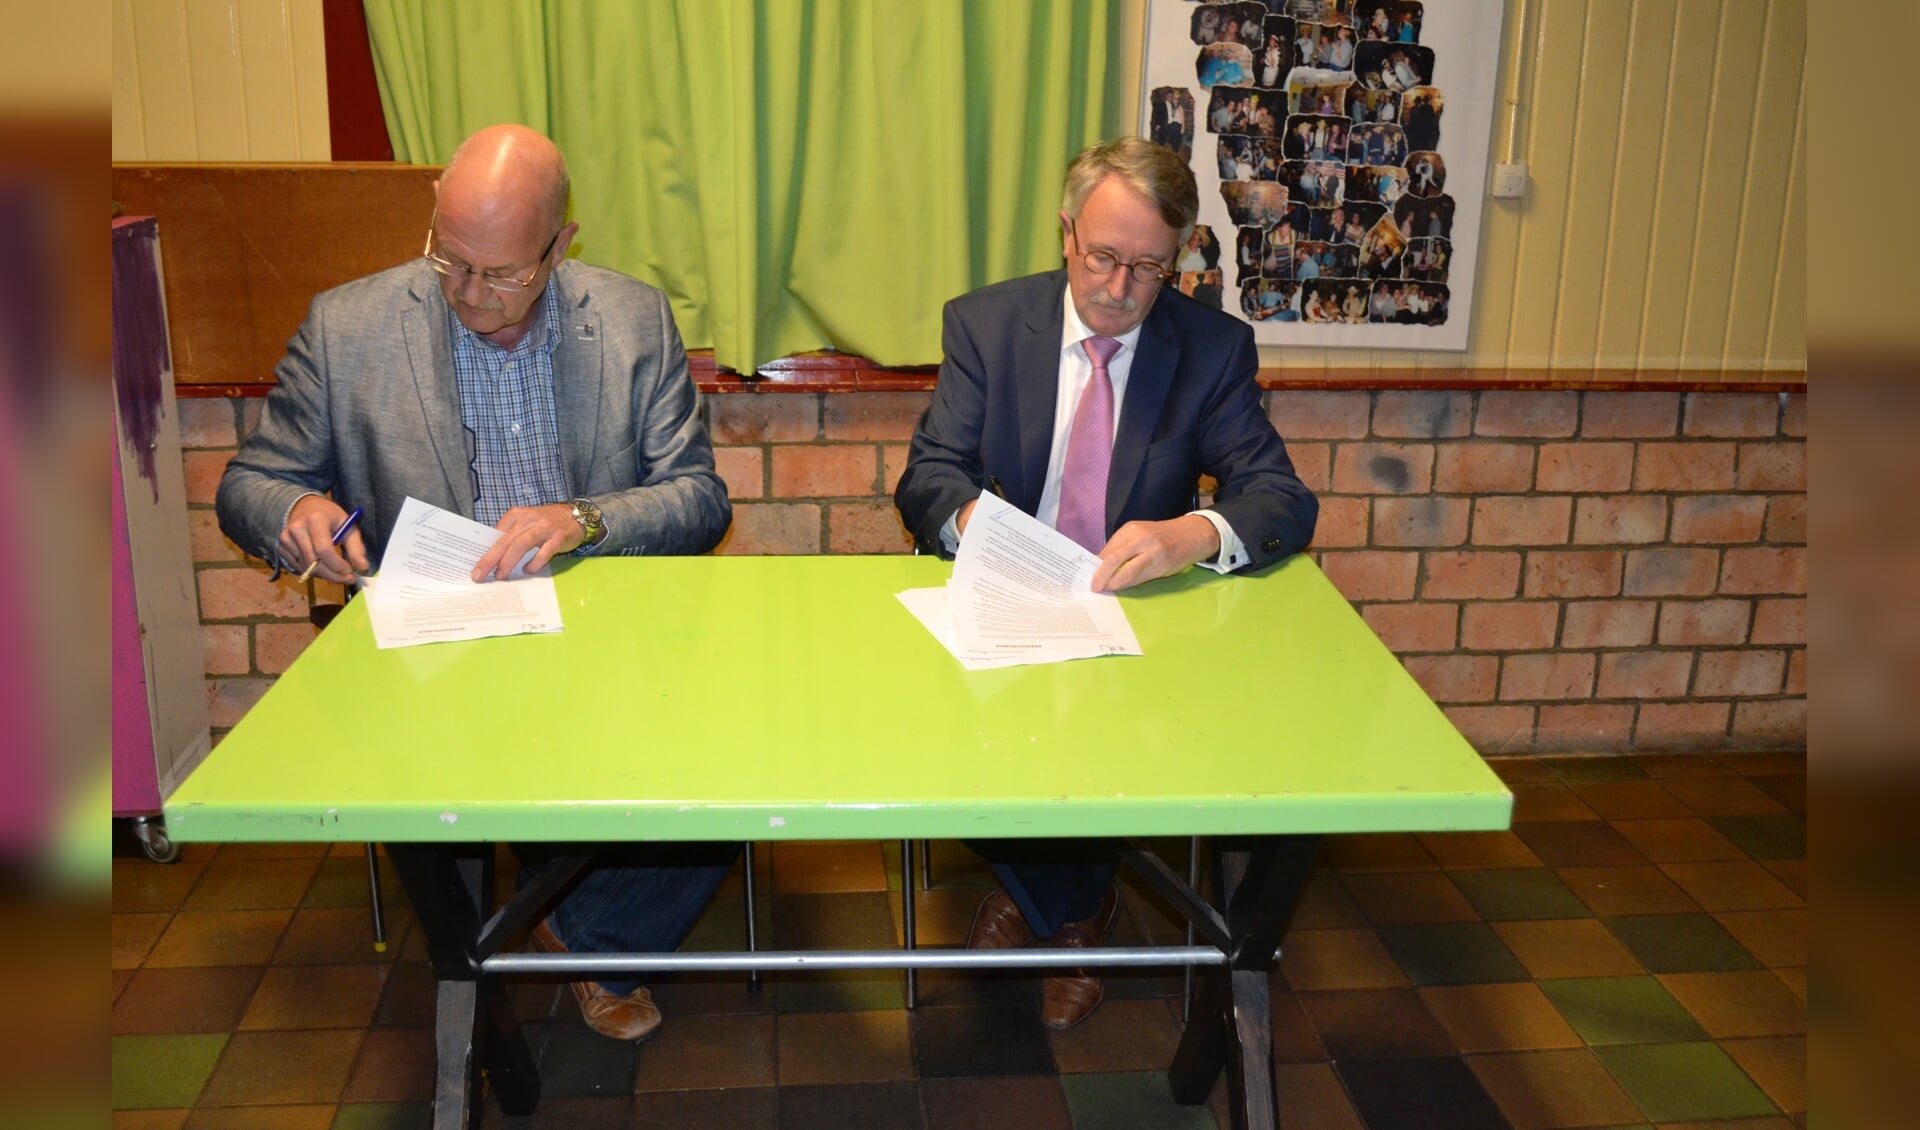 Edwin Hoving en burgemeester Horseling zetten hun handtekening 